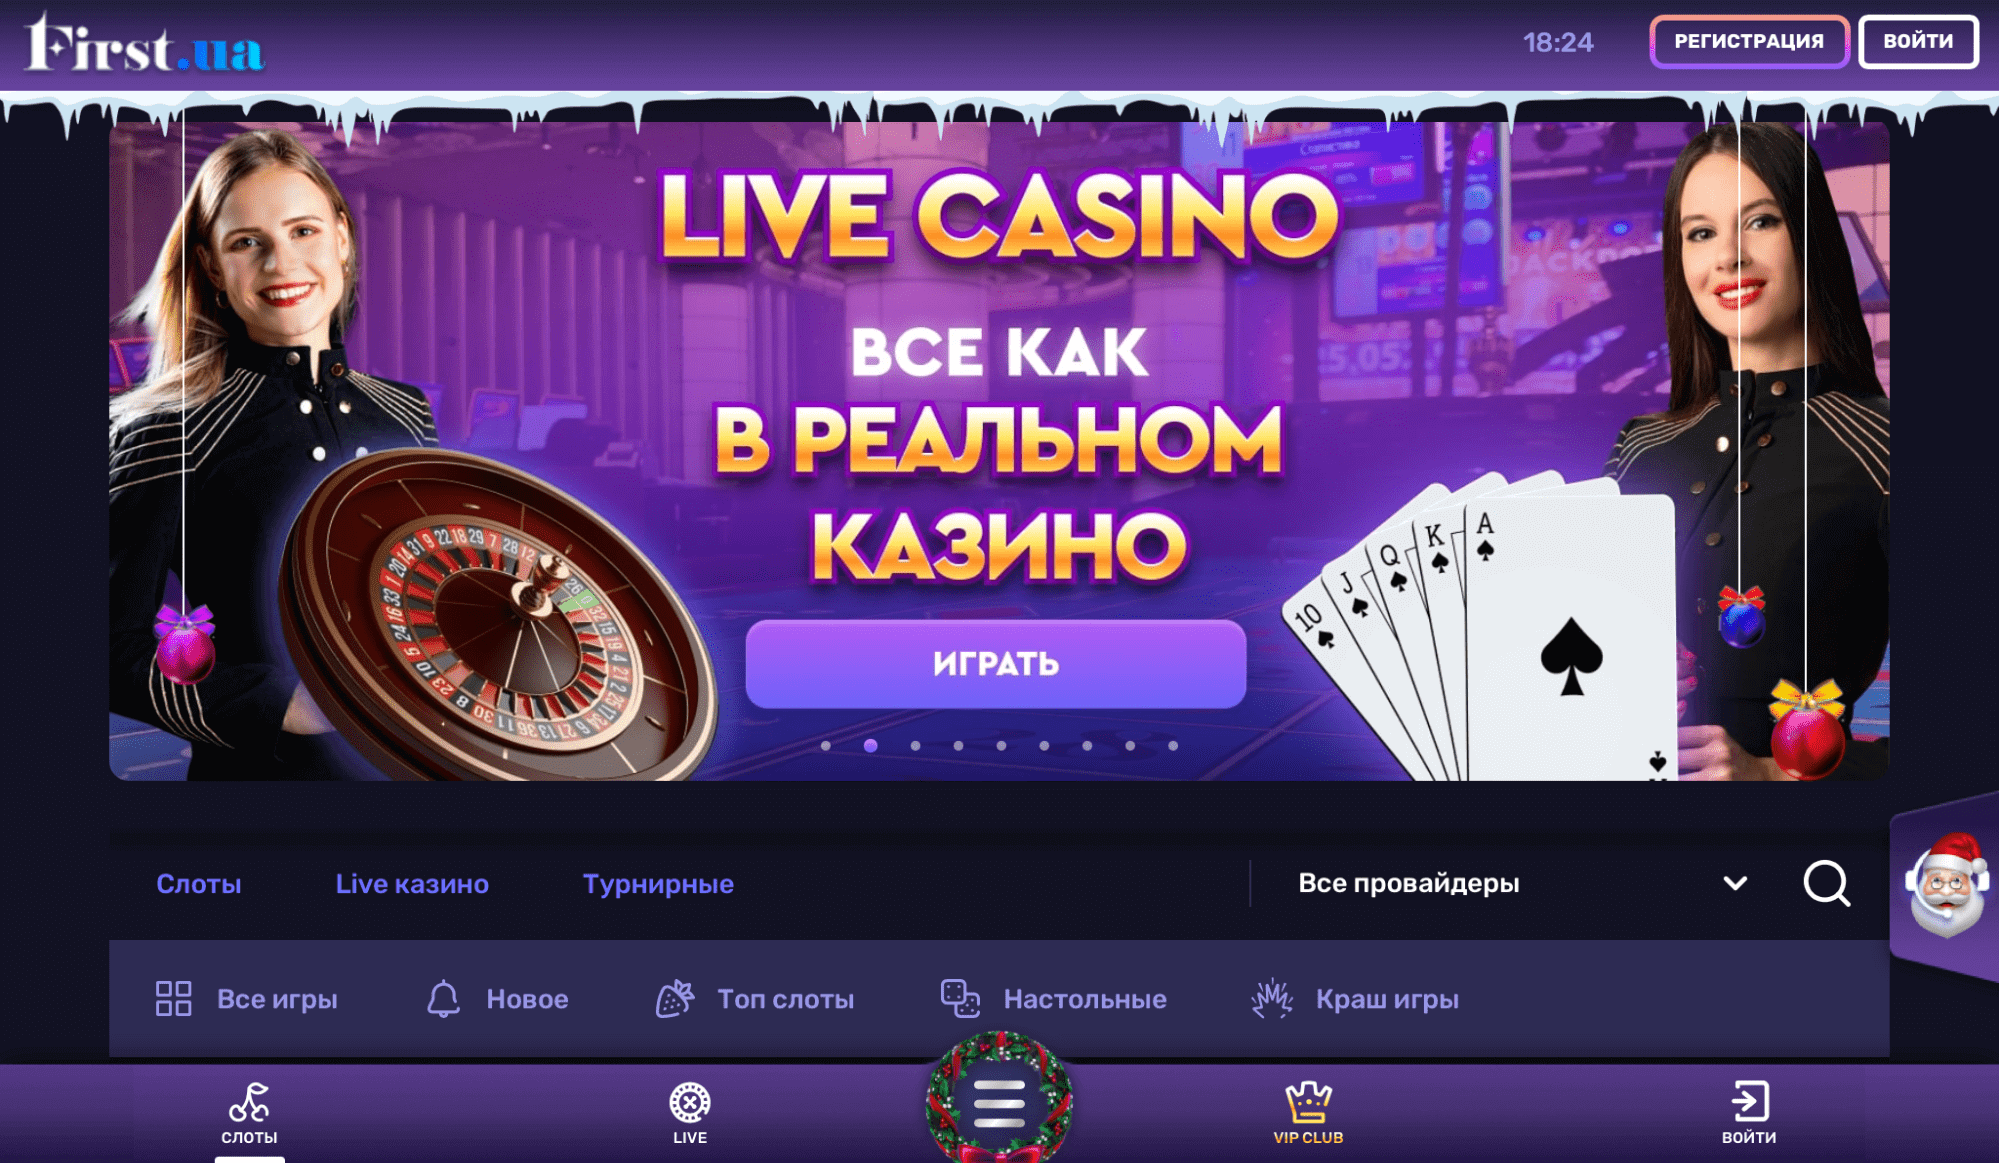 First Casino (мобильная версия сайта)